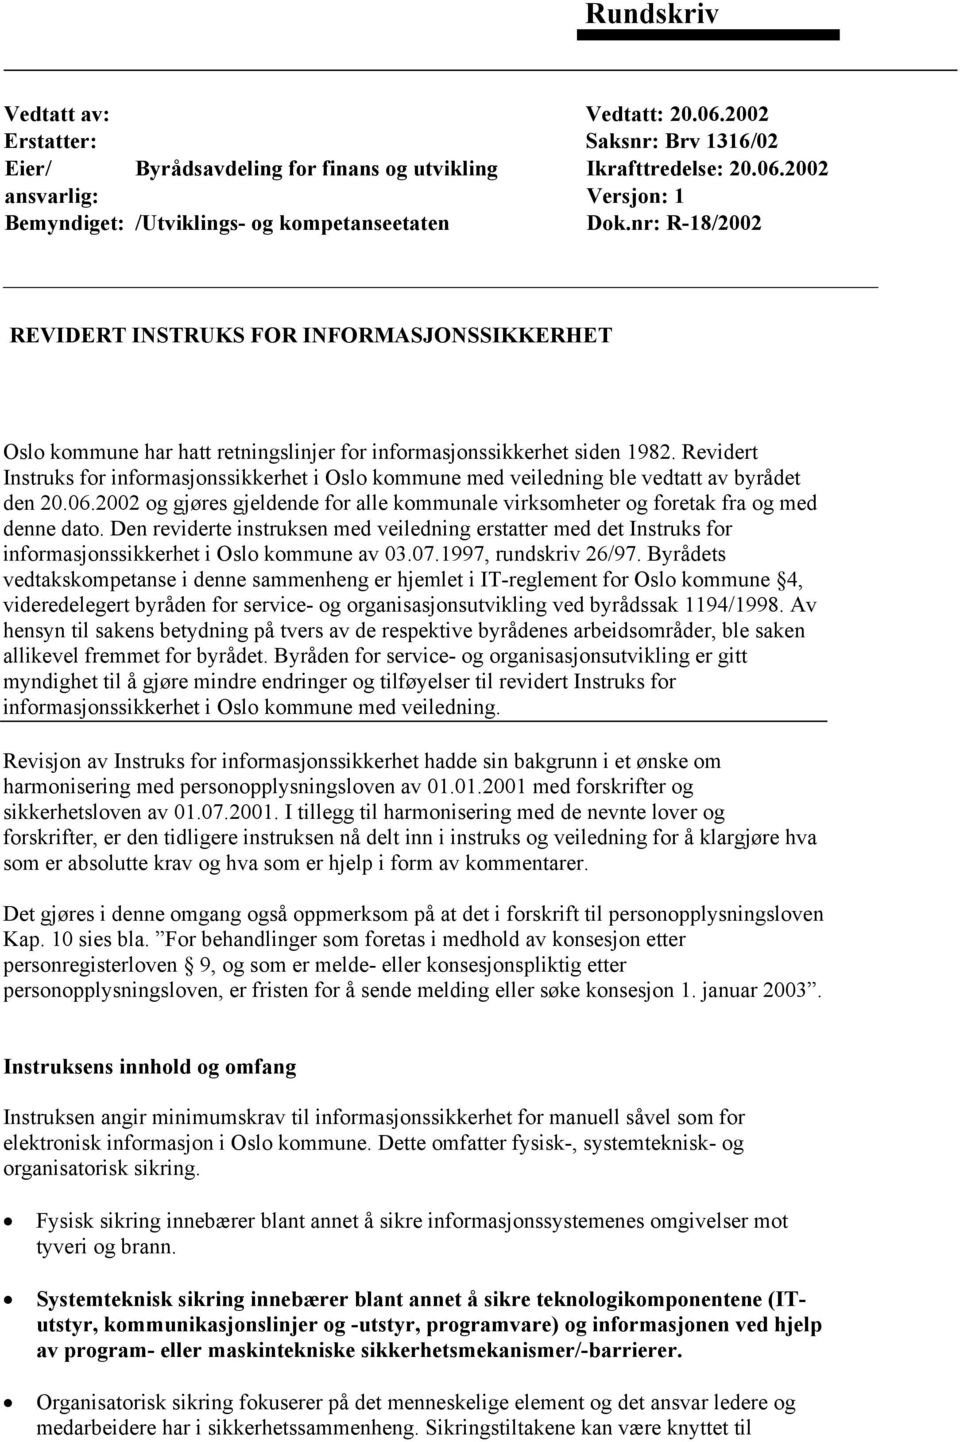 Revidert Instruks for informasjonssikkerhet i Oslo kommune med veiledning ble vedtatt av byrådet den 20.06.2002 og gjøres gjeldende for alle kommunale virksomheter og foretak fra og med denne dato.